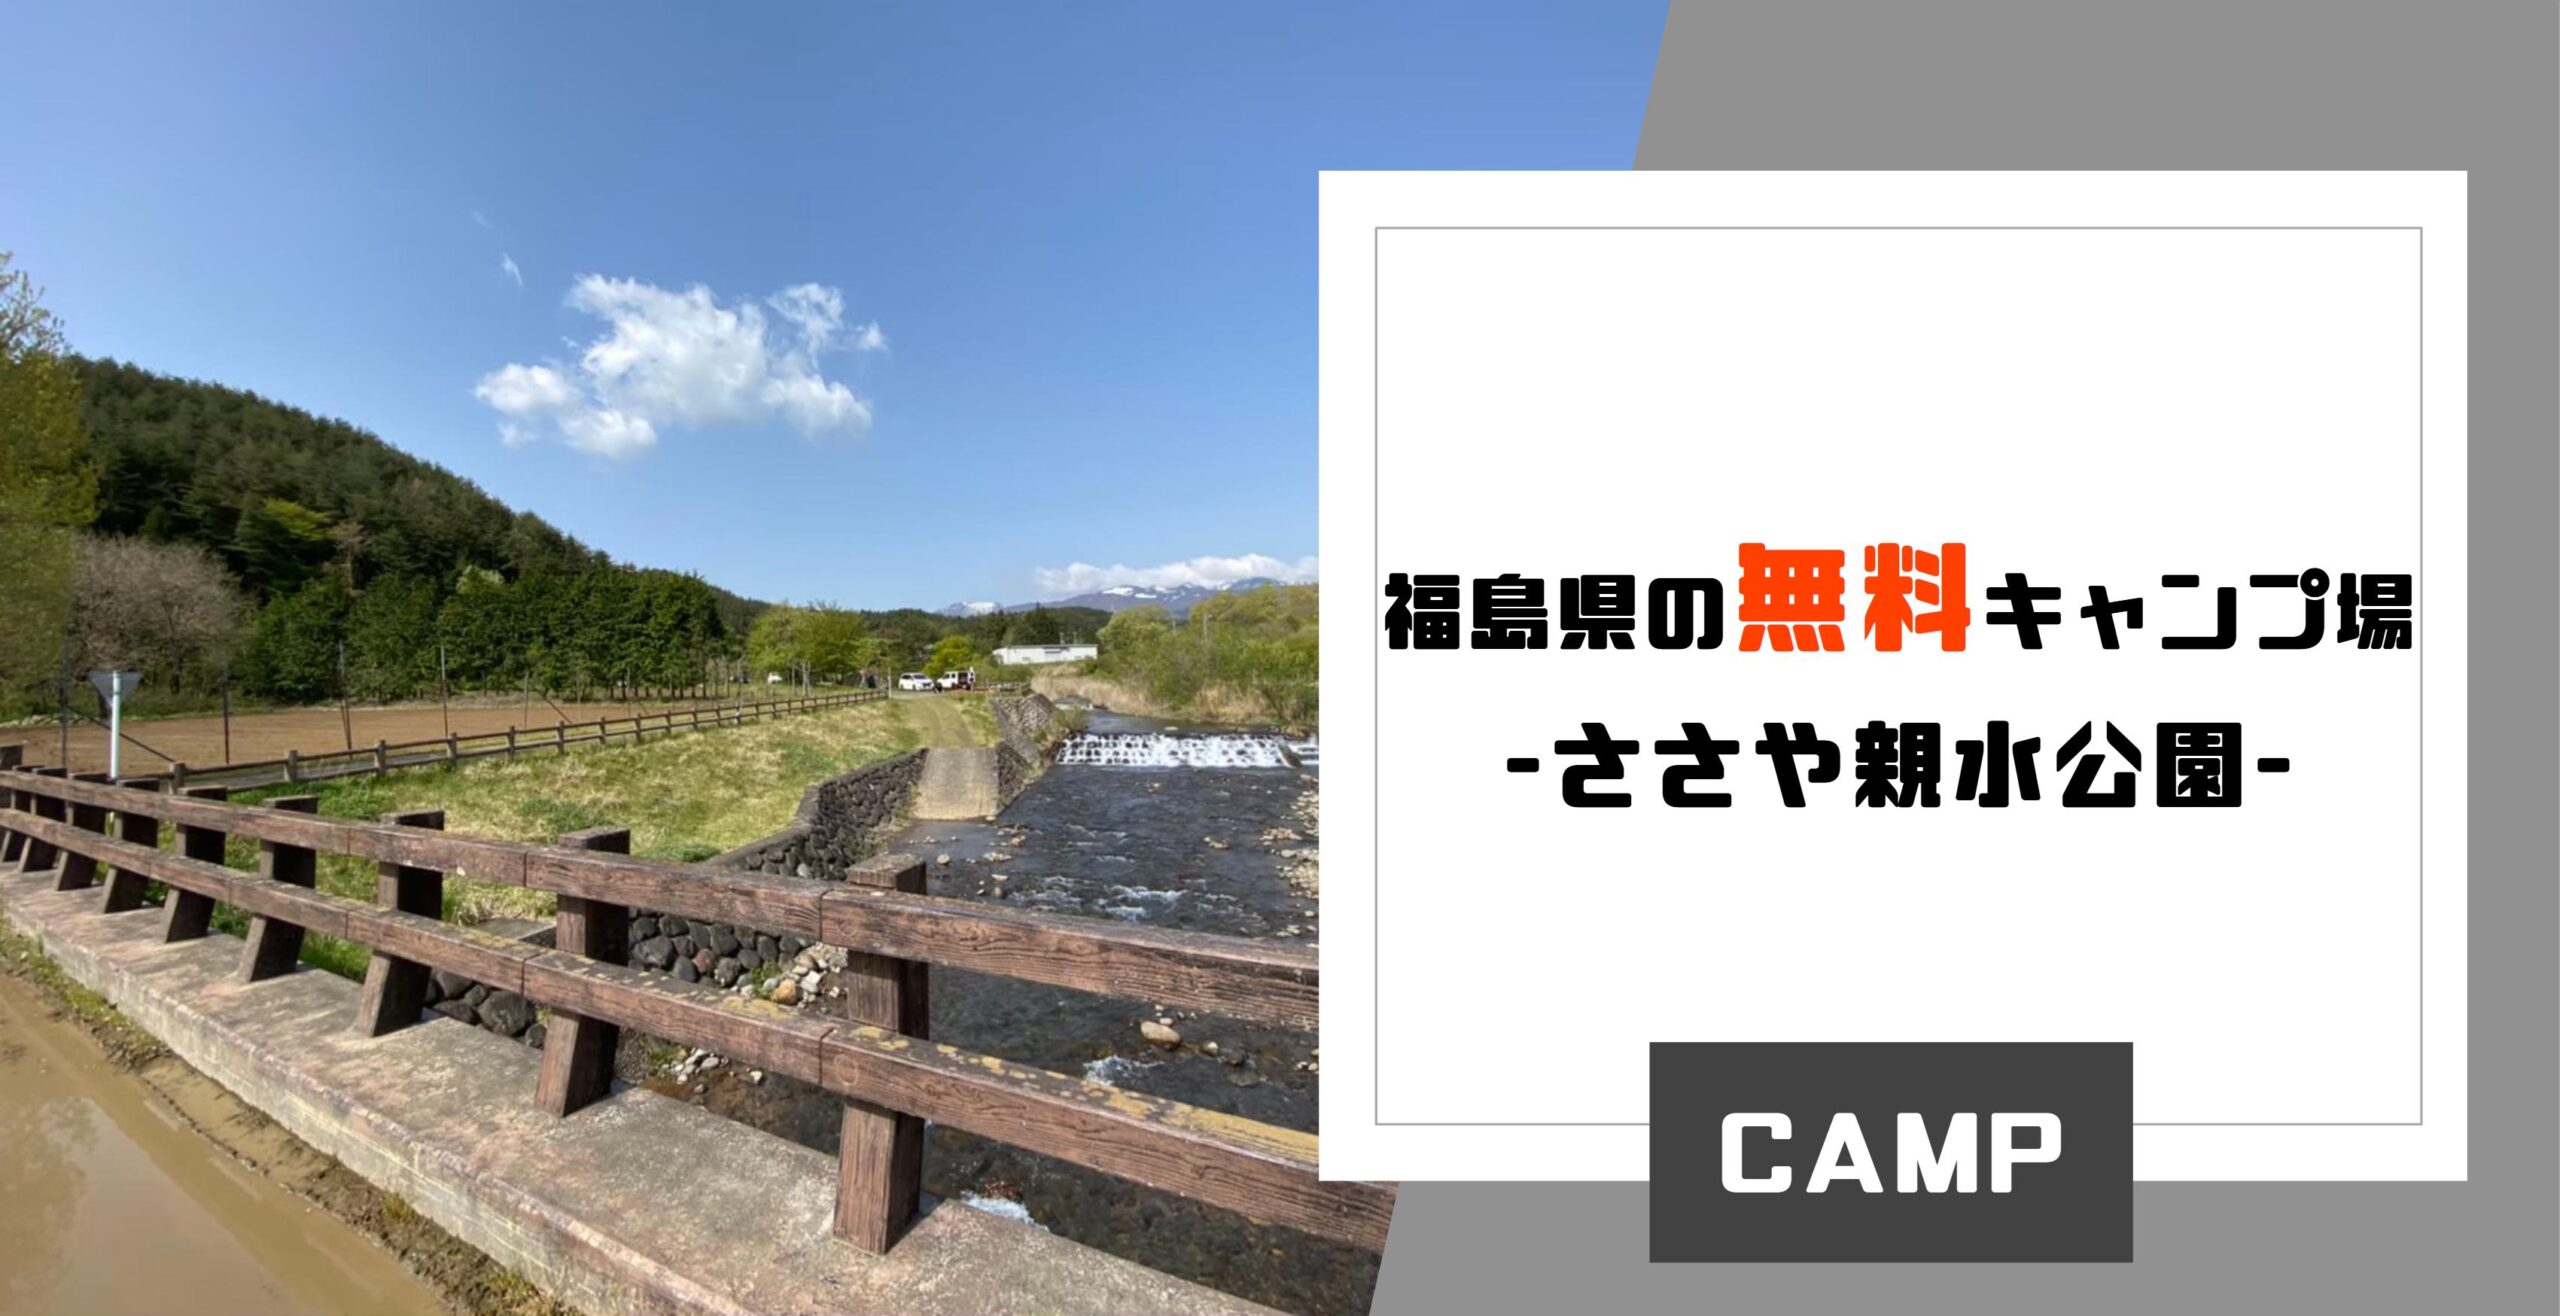 21 福島県 二本松市 ささや親水公園 無料キャンプ場でキャンプ みちのくらし